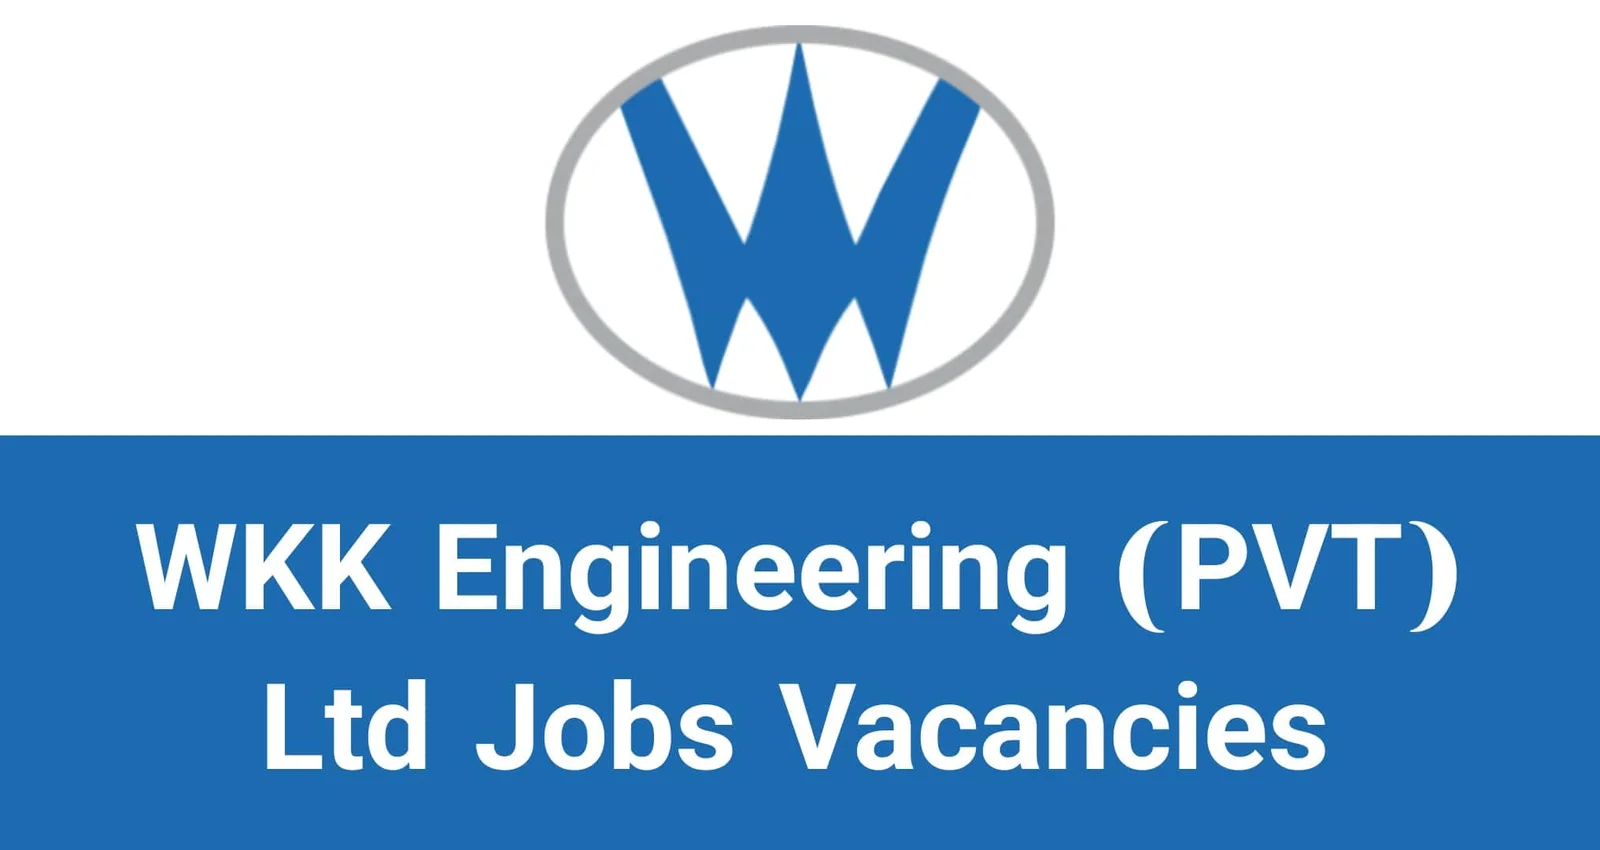 WKK Engineering (PVT) Ltd Jobs Vacancies